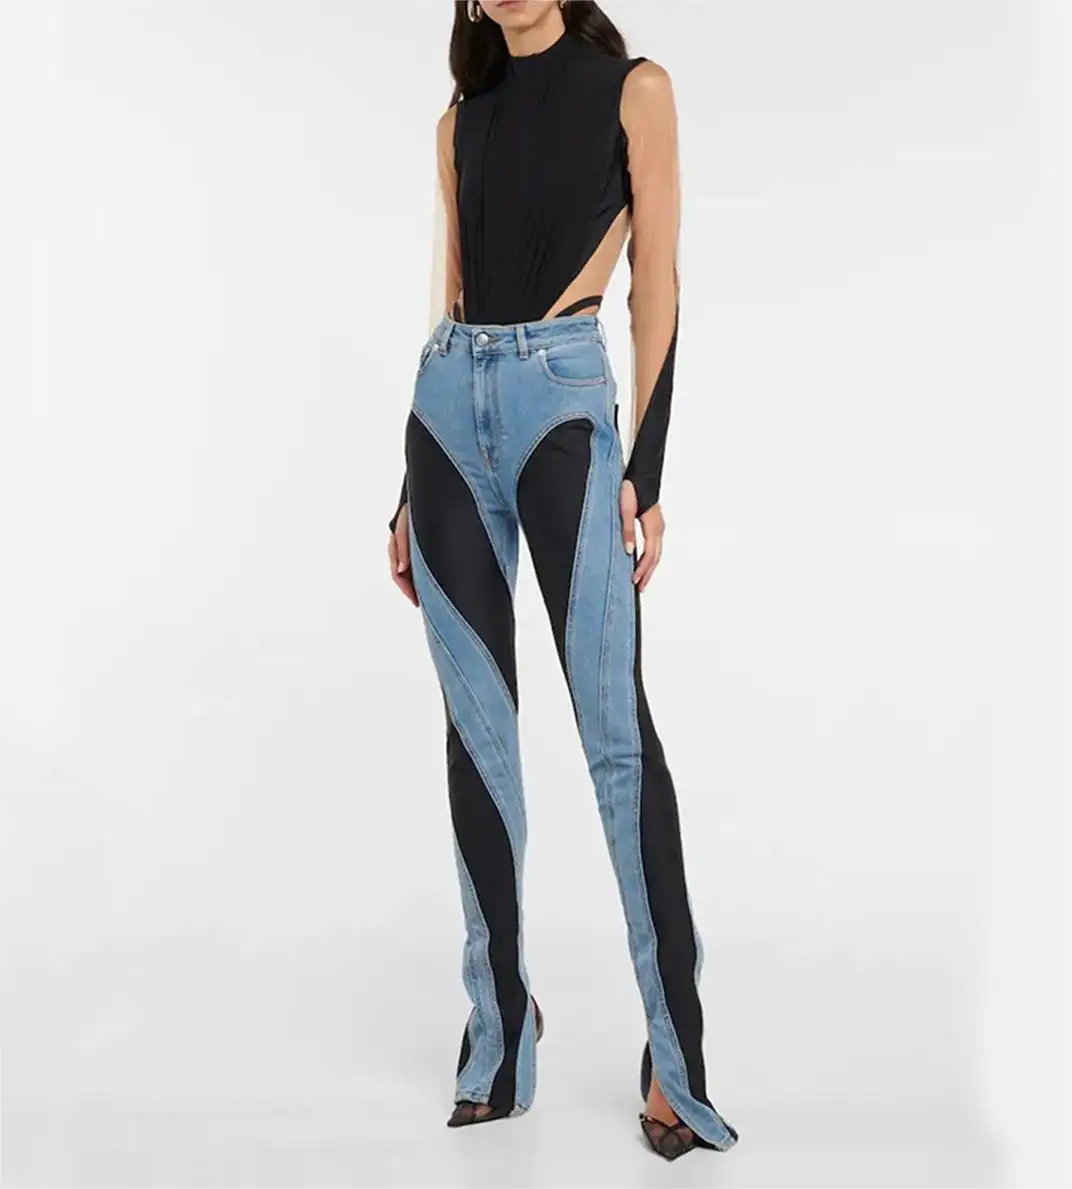 Contrasting Color Pantalones Vaqueros De Cuello Alto Jeans Taille Haute High Waist Sexy Skinny Slit Hem Ladies Denim Jeans